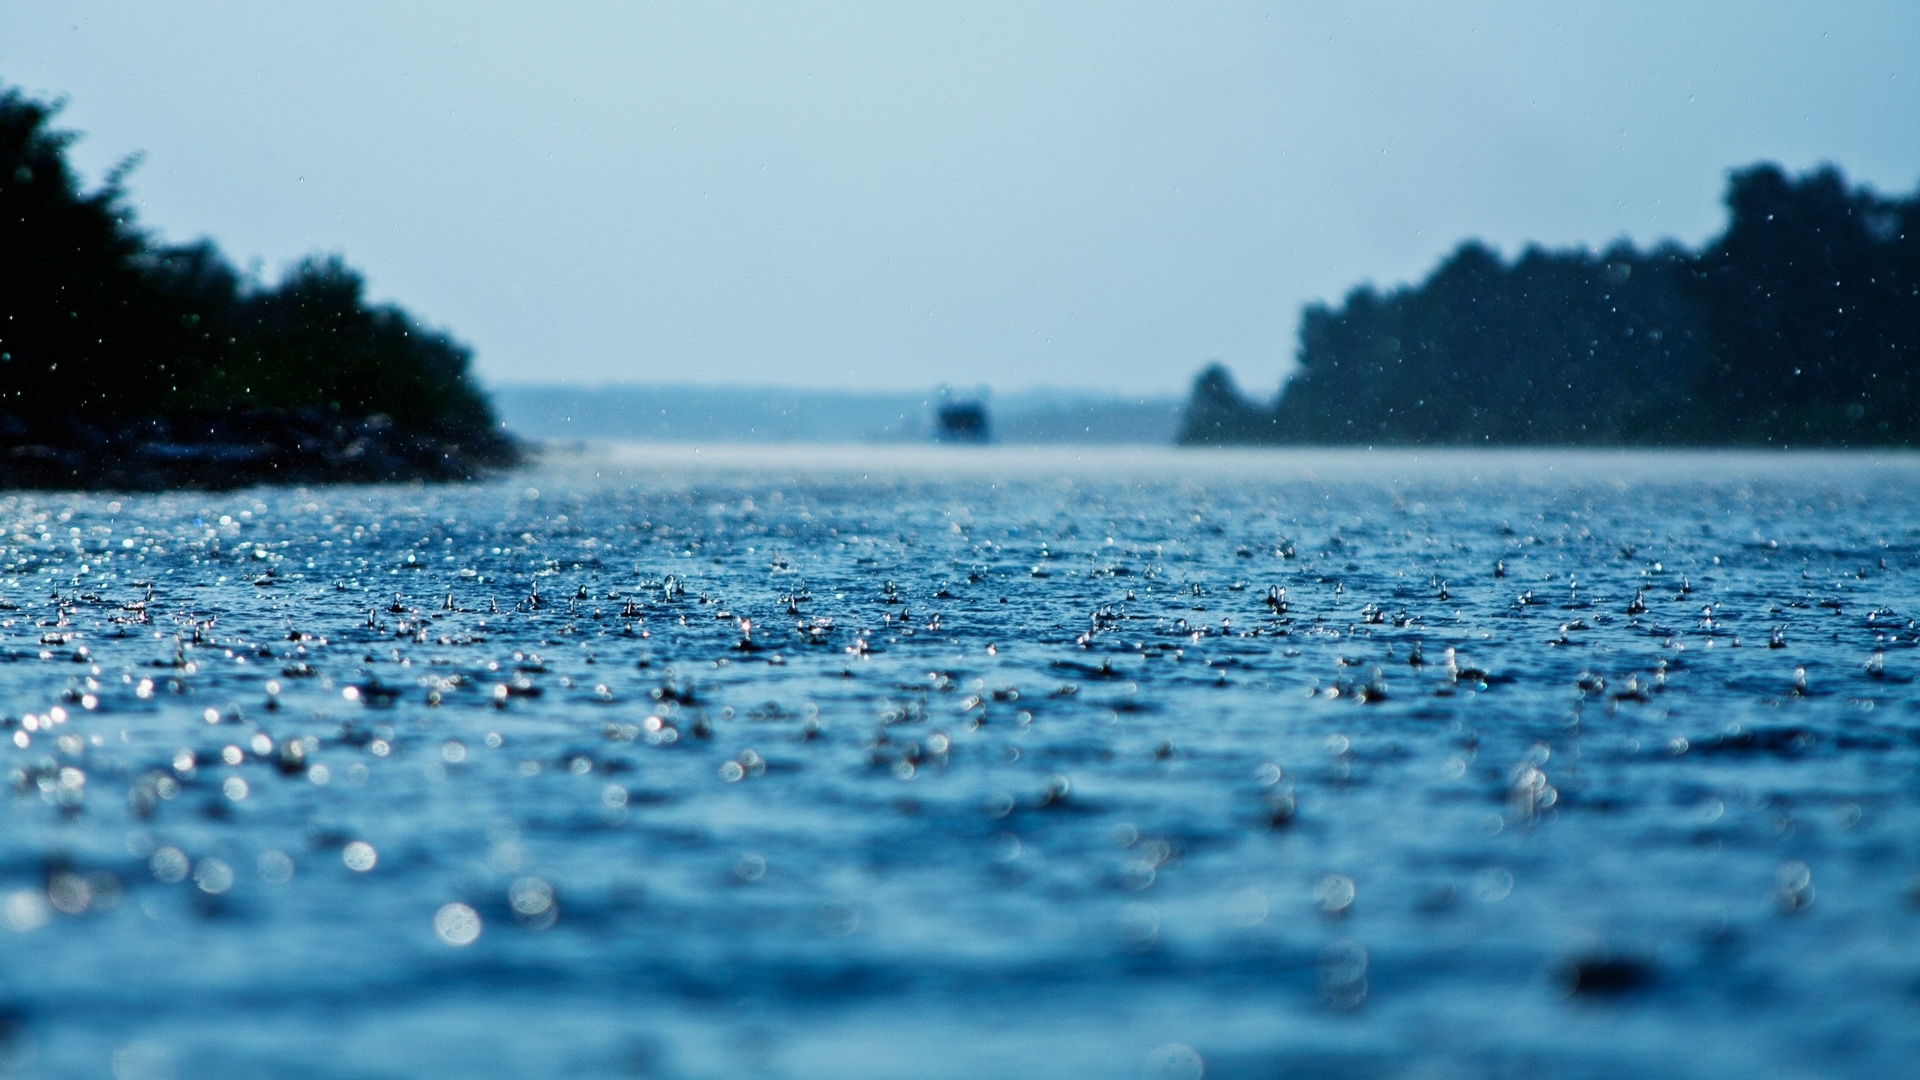 Скачать обои бесплатно Вода, Дождь, Земля/природа картинка на рабочий стол ПК